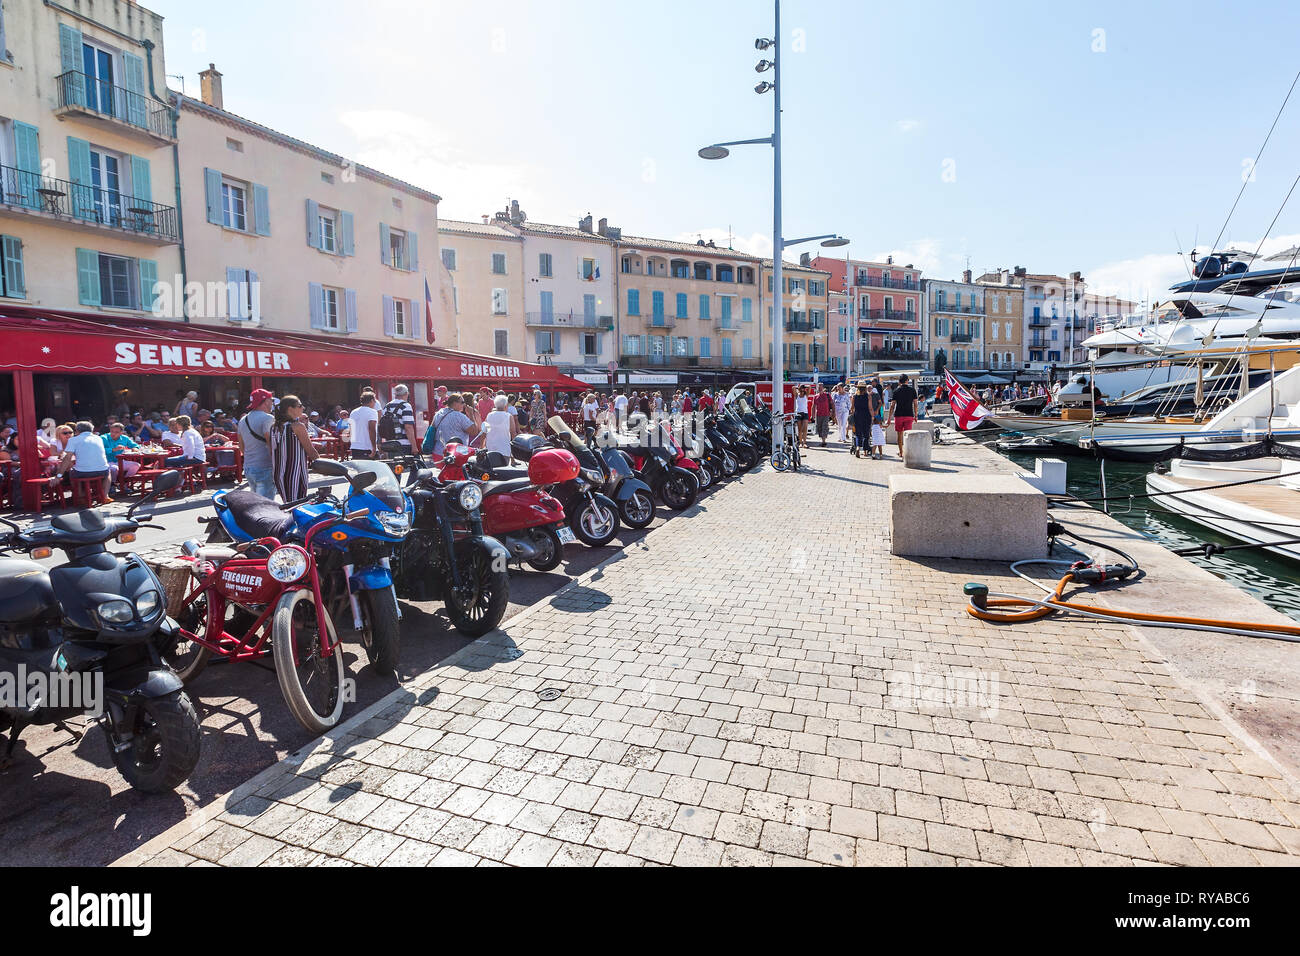 Promenade mit Geschaeften, das wichtigste Fortbewegungsmittel sind die vielen Motorraeder in Saint Tropez, Frankreich, 01.09.2018 Bildnachweis: Mario  Stock Photo